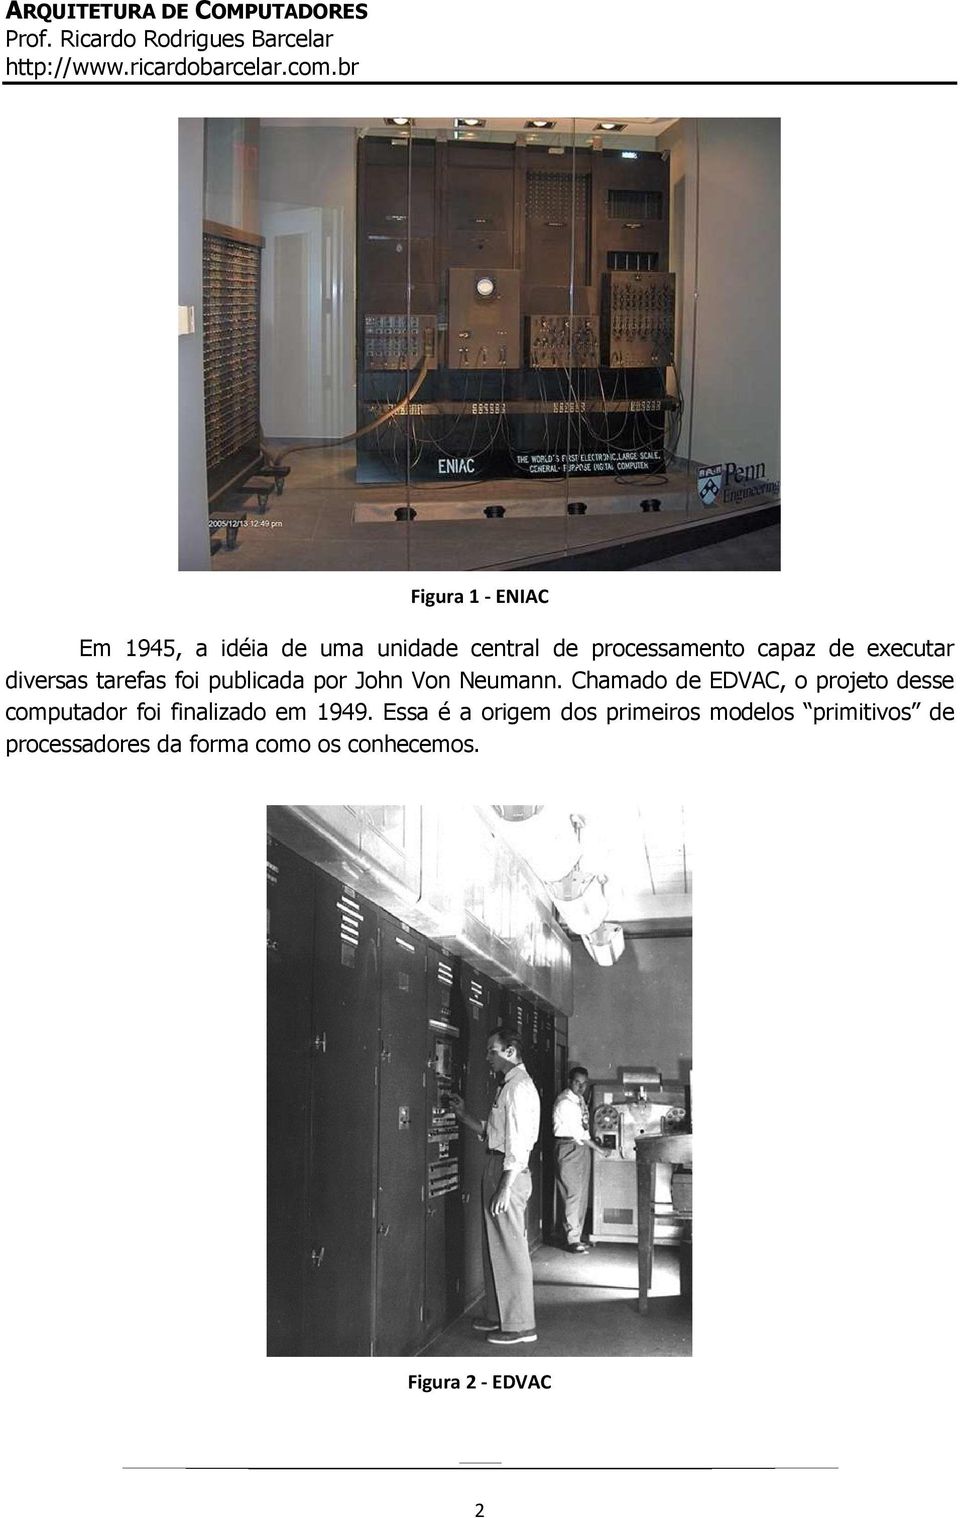 Chamado de EDVAC, o projeto desse computador foi finalizado em 1949.